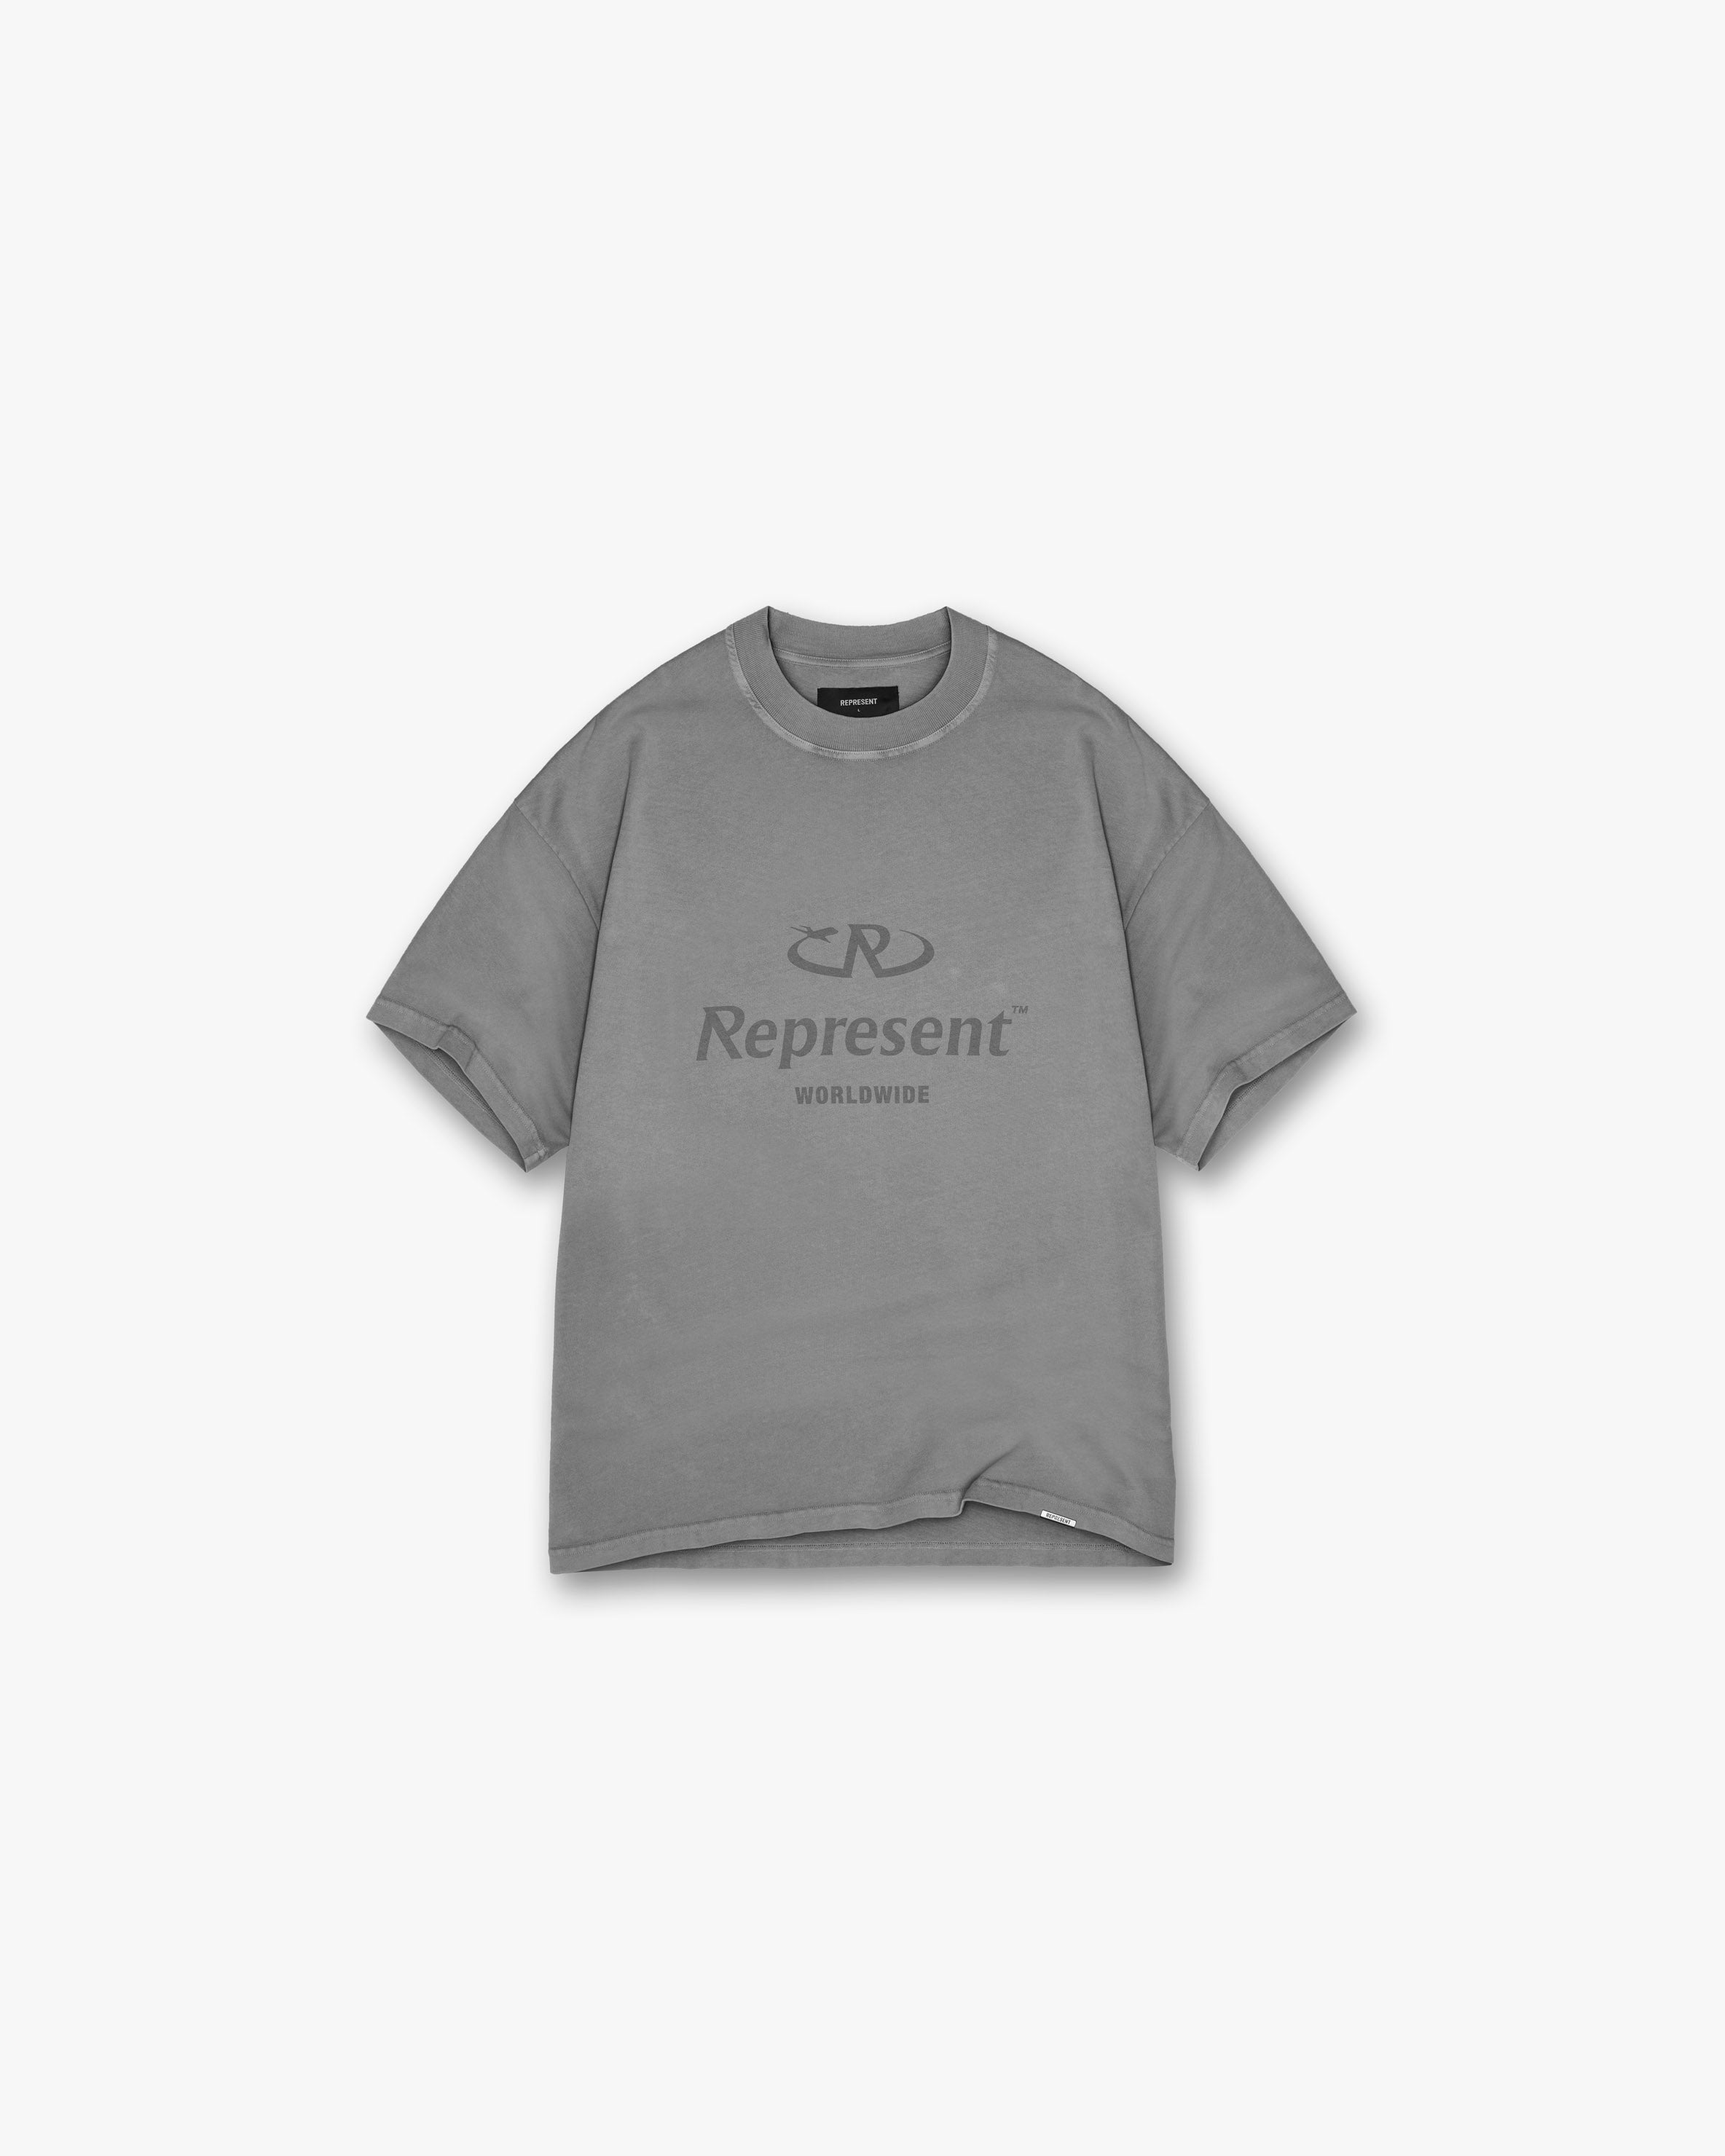 Worldwide T-Shirt - Ultimate Grey